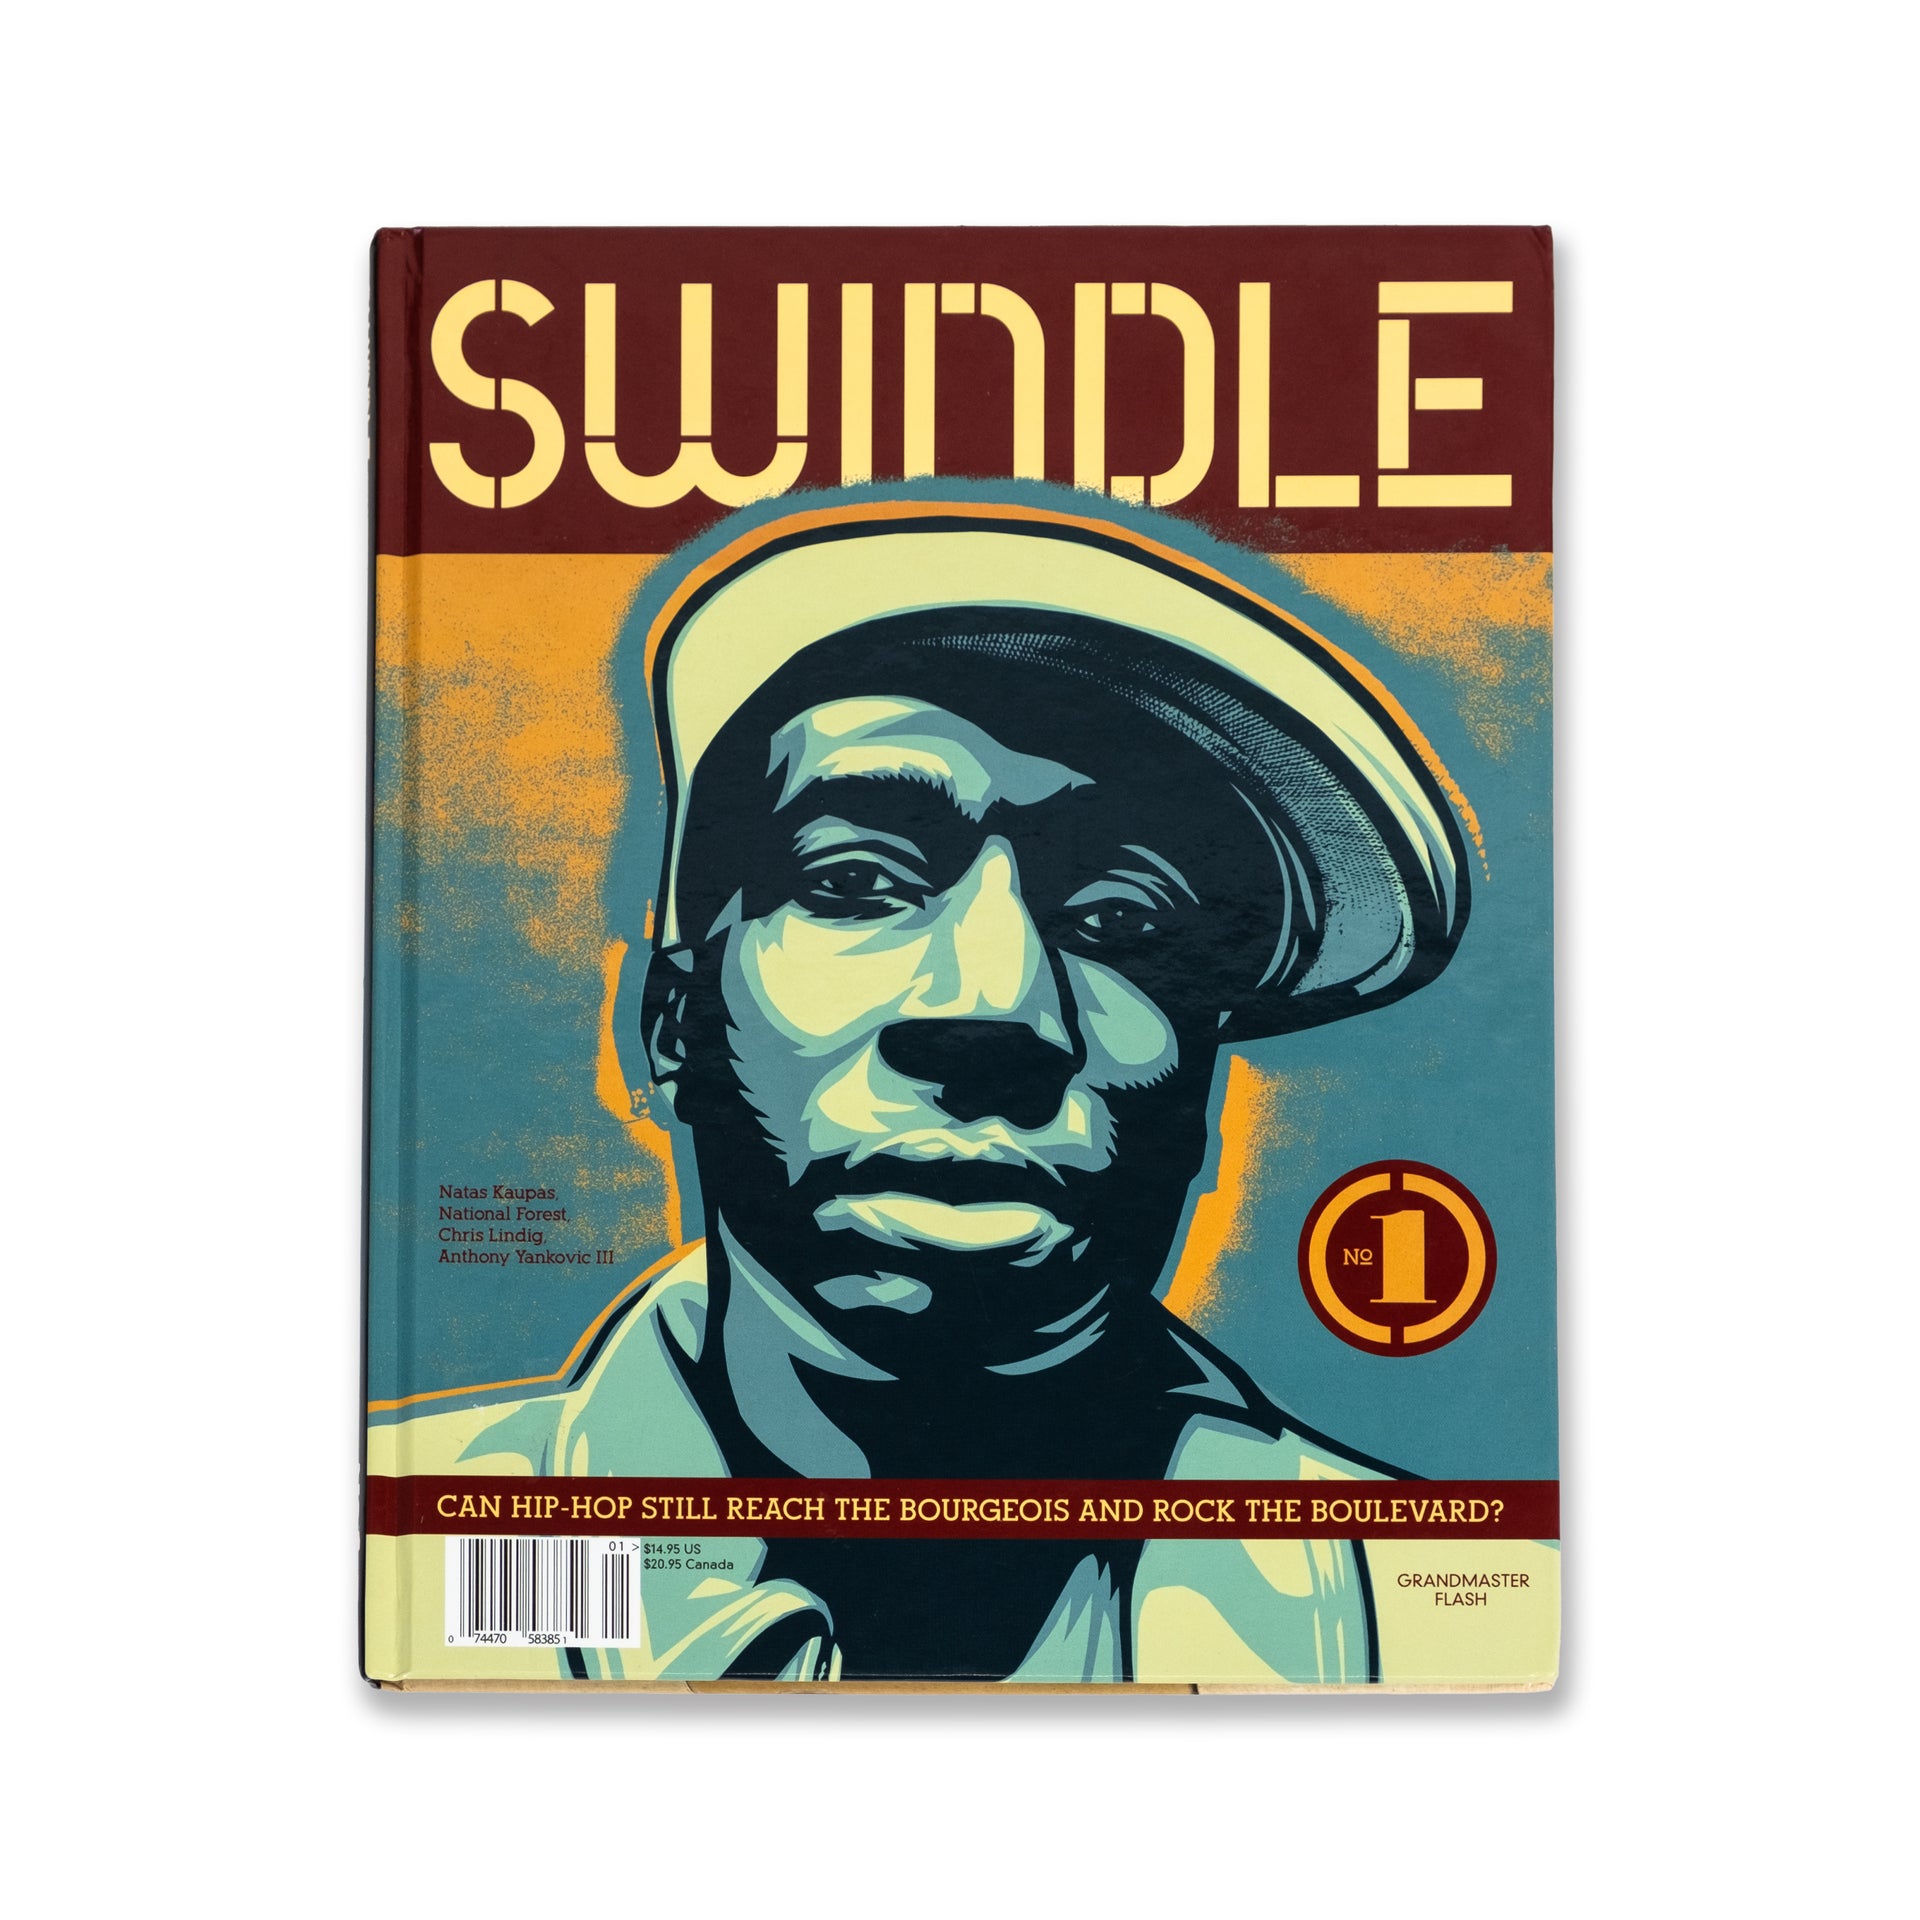 SWINDLE Magazine "Issue No. 1"